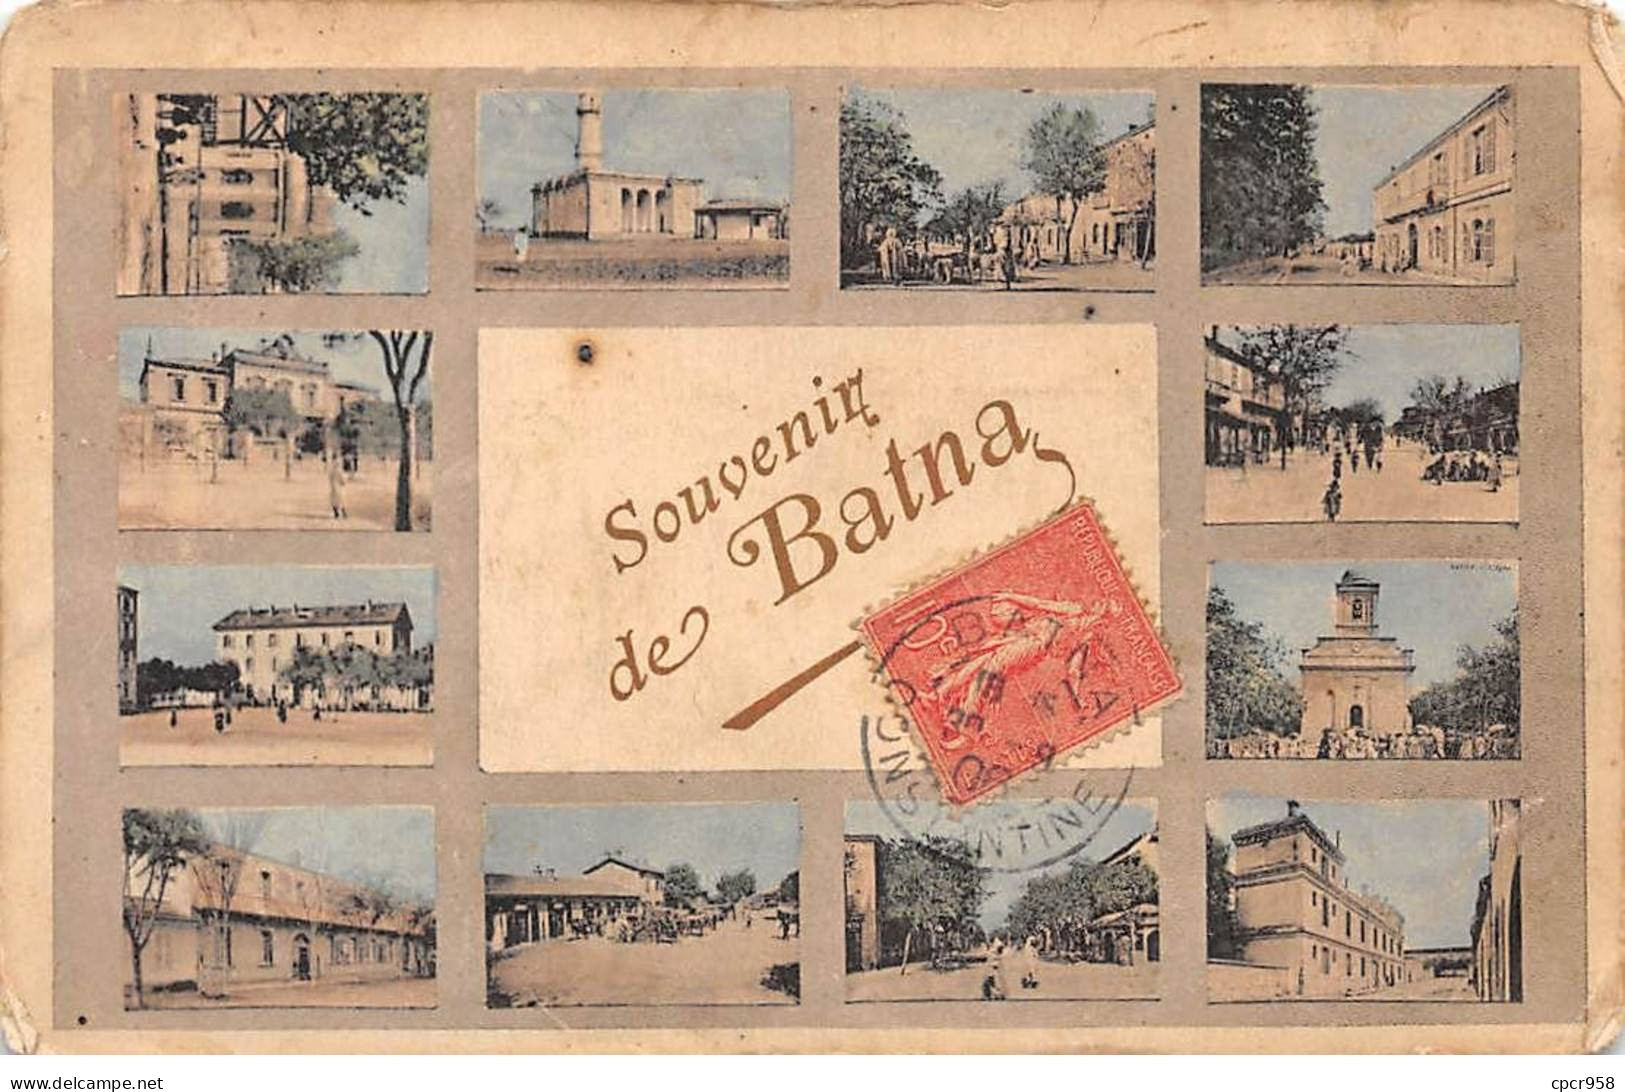 ALGERIE - SAN64586 - Batna - Souvenir De Batna - Divers Aspects De La Ville - Batna